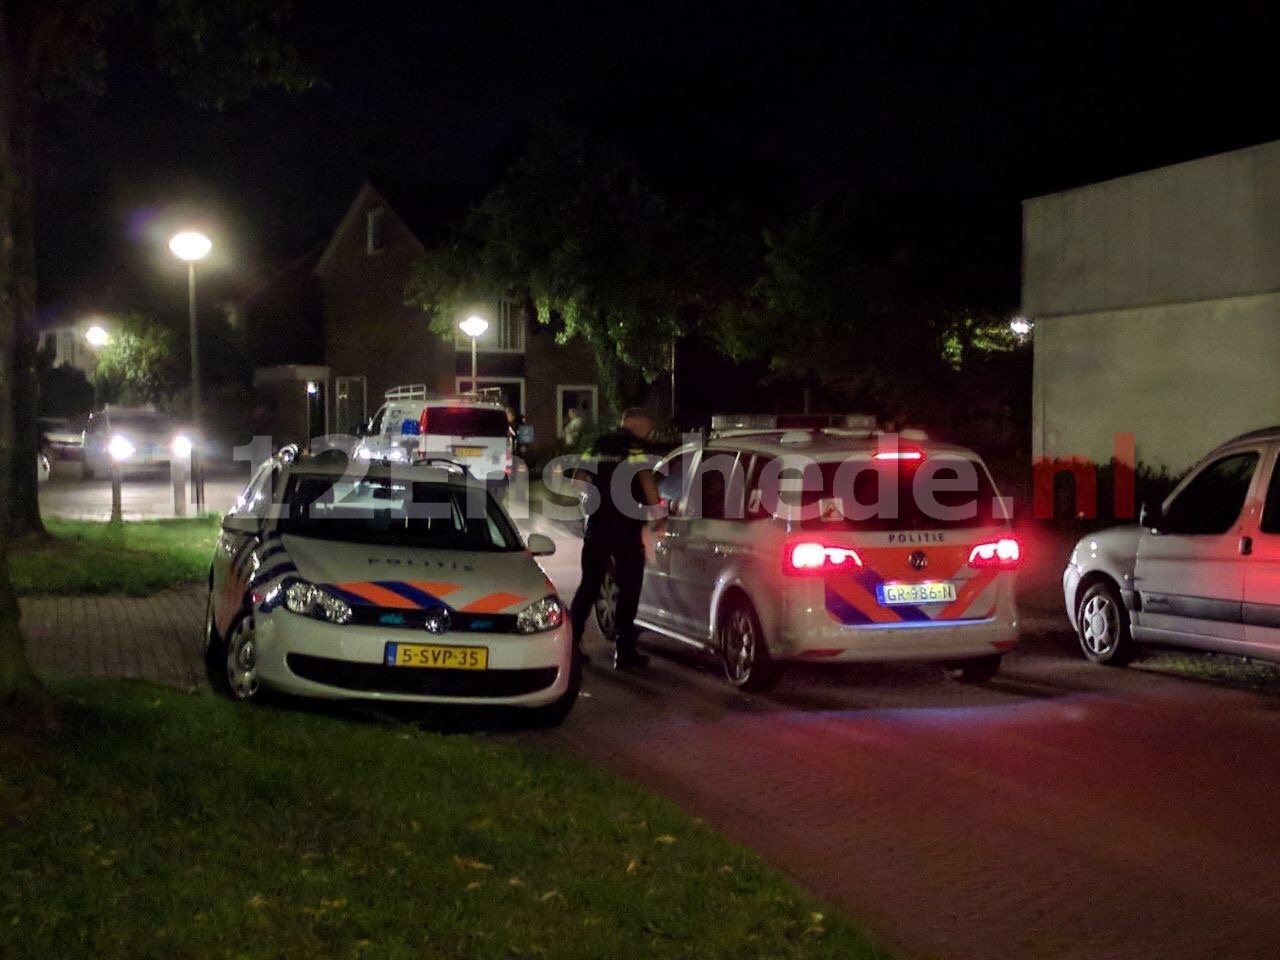 20-jarige pizzakoerier in Enschede overvallen; politie zoekt getuigen